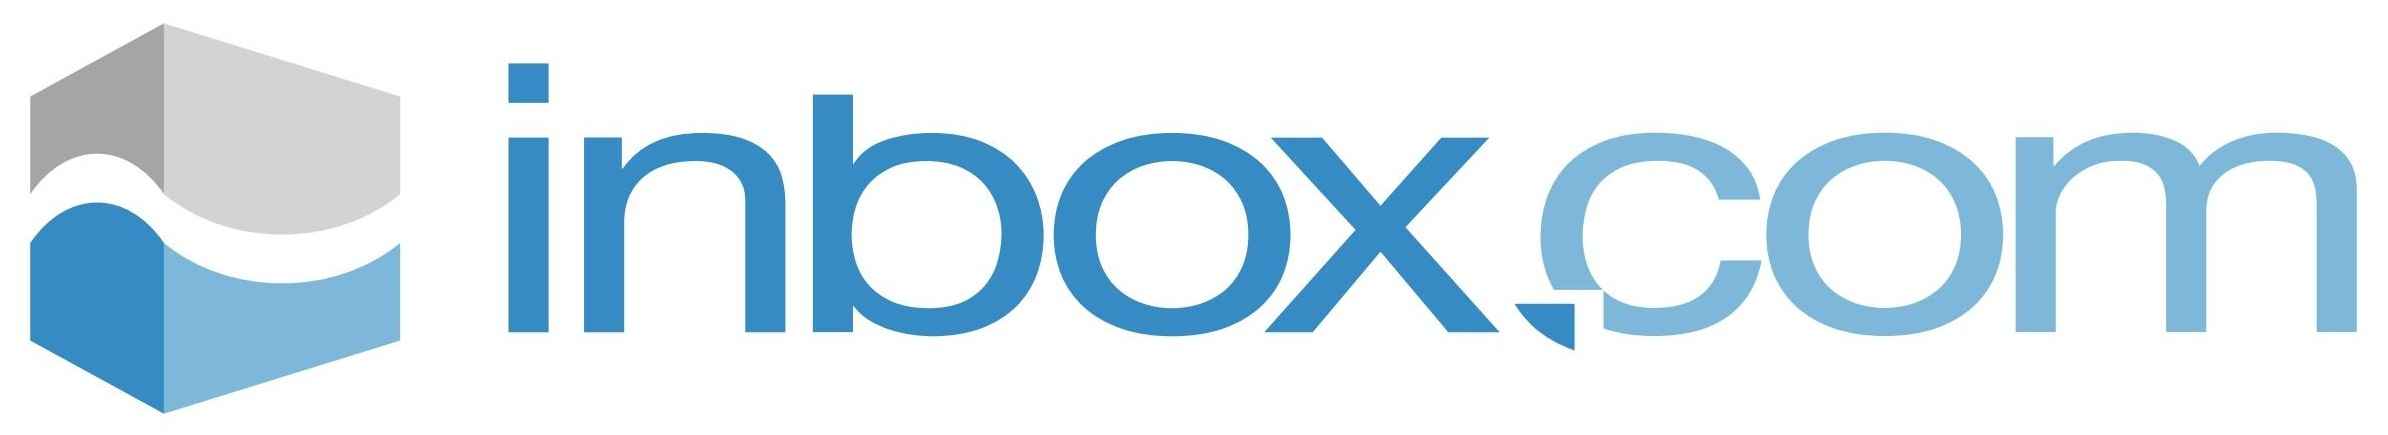 Inbox u. Инбокс. Inbox. Inbox logo. Inbox.com.